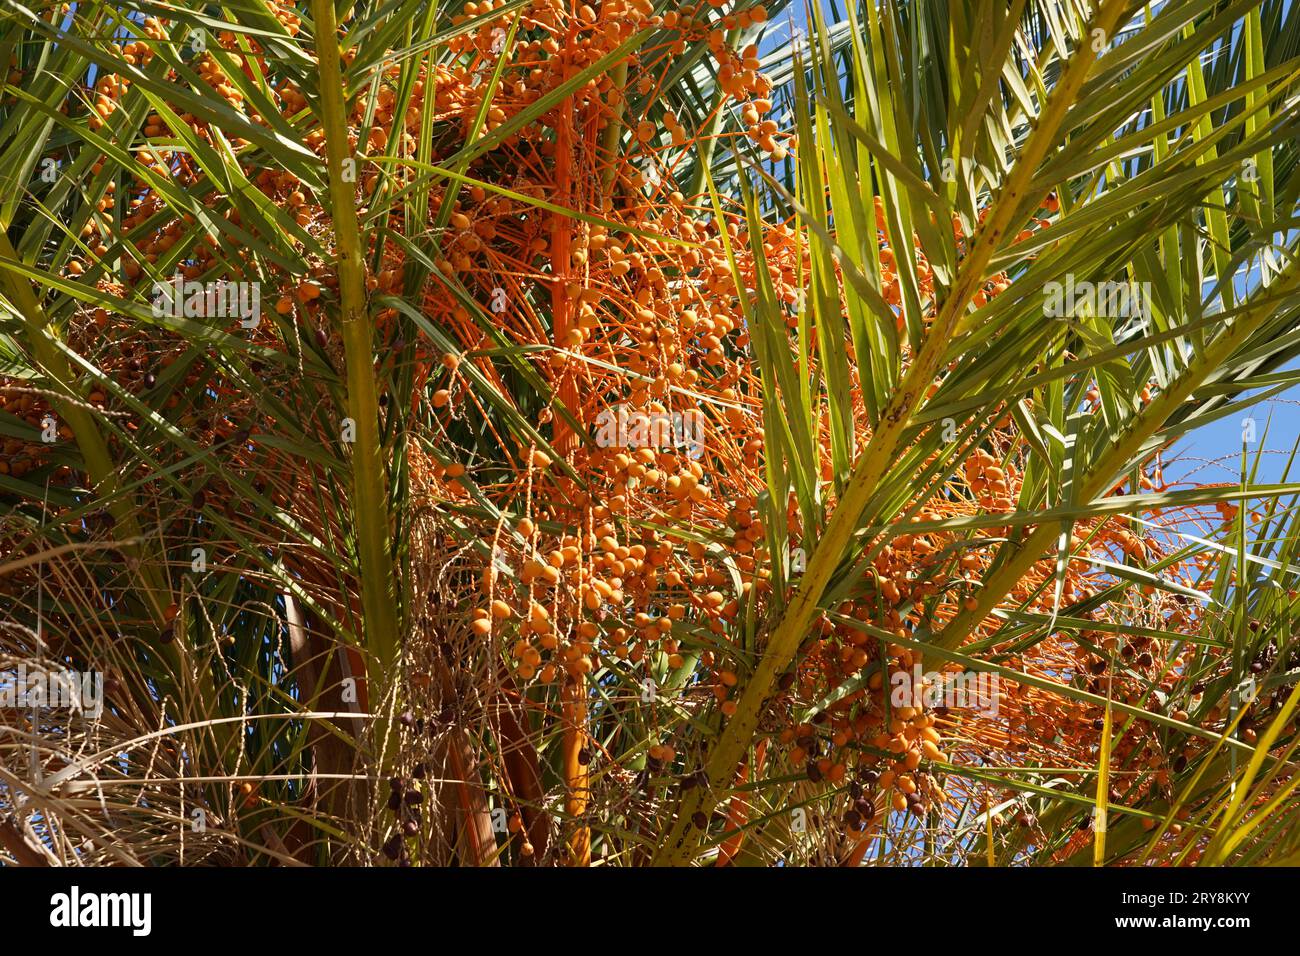 Palmier dattier, en latin appelé Phoenix dactylifera montrant une découpe de la couronne avec quelques feuilles et des détails sur des grappes de fruits dattiers. Banque D'Images